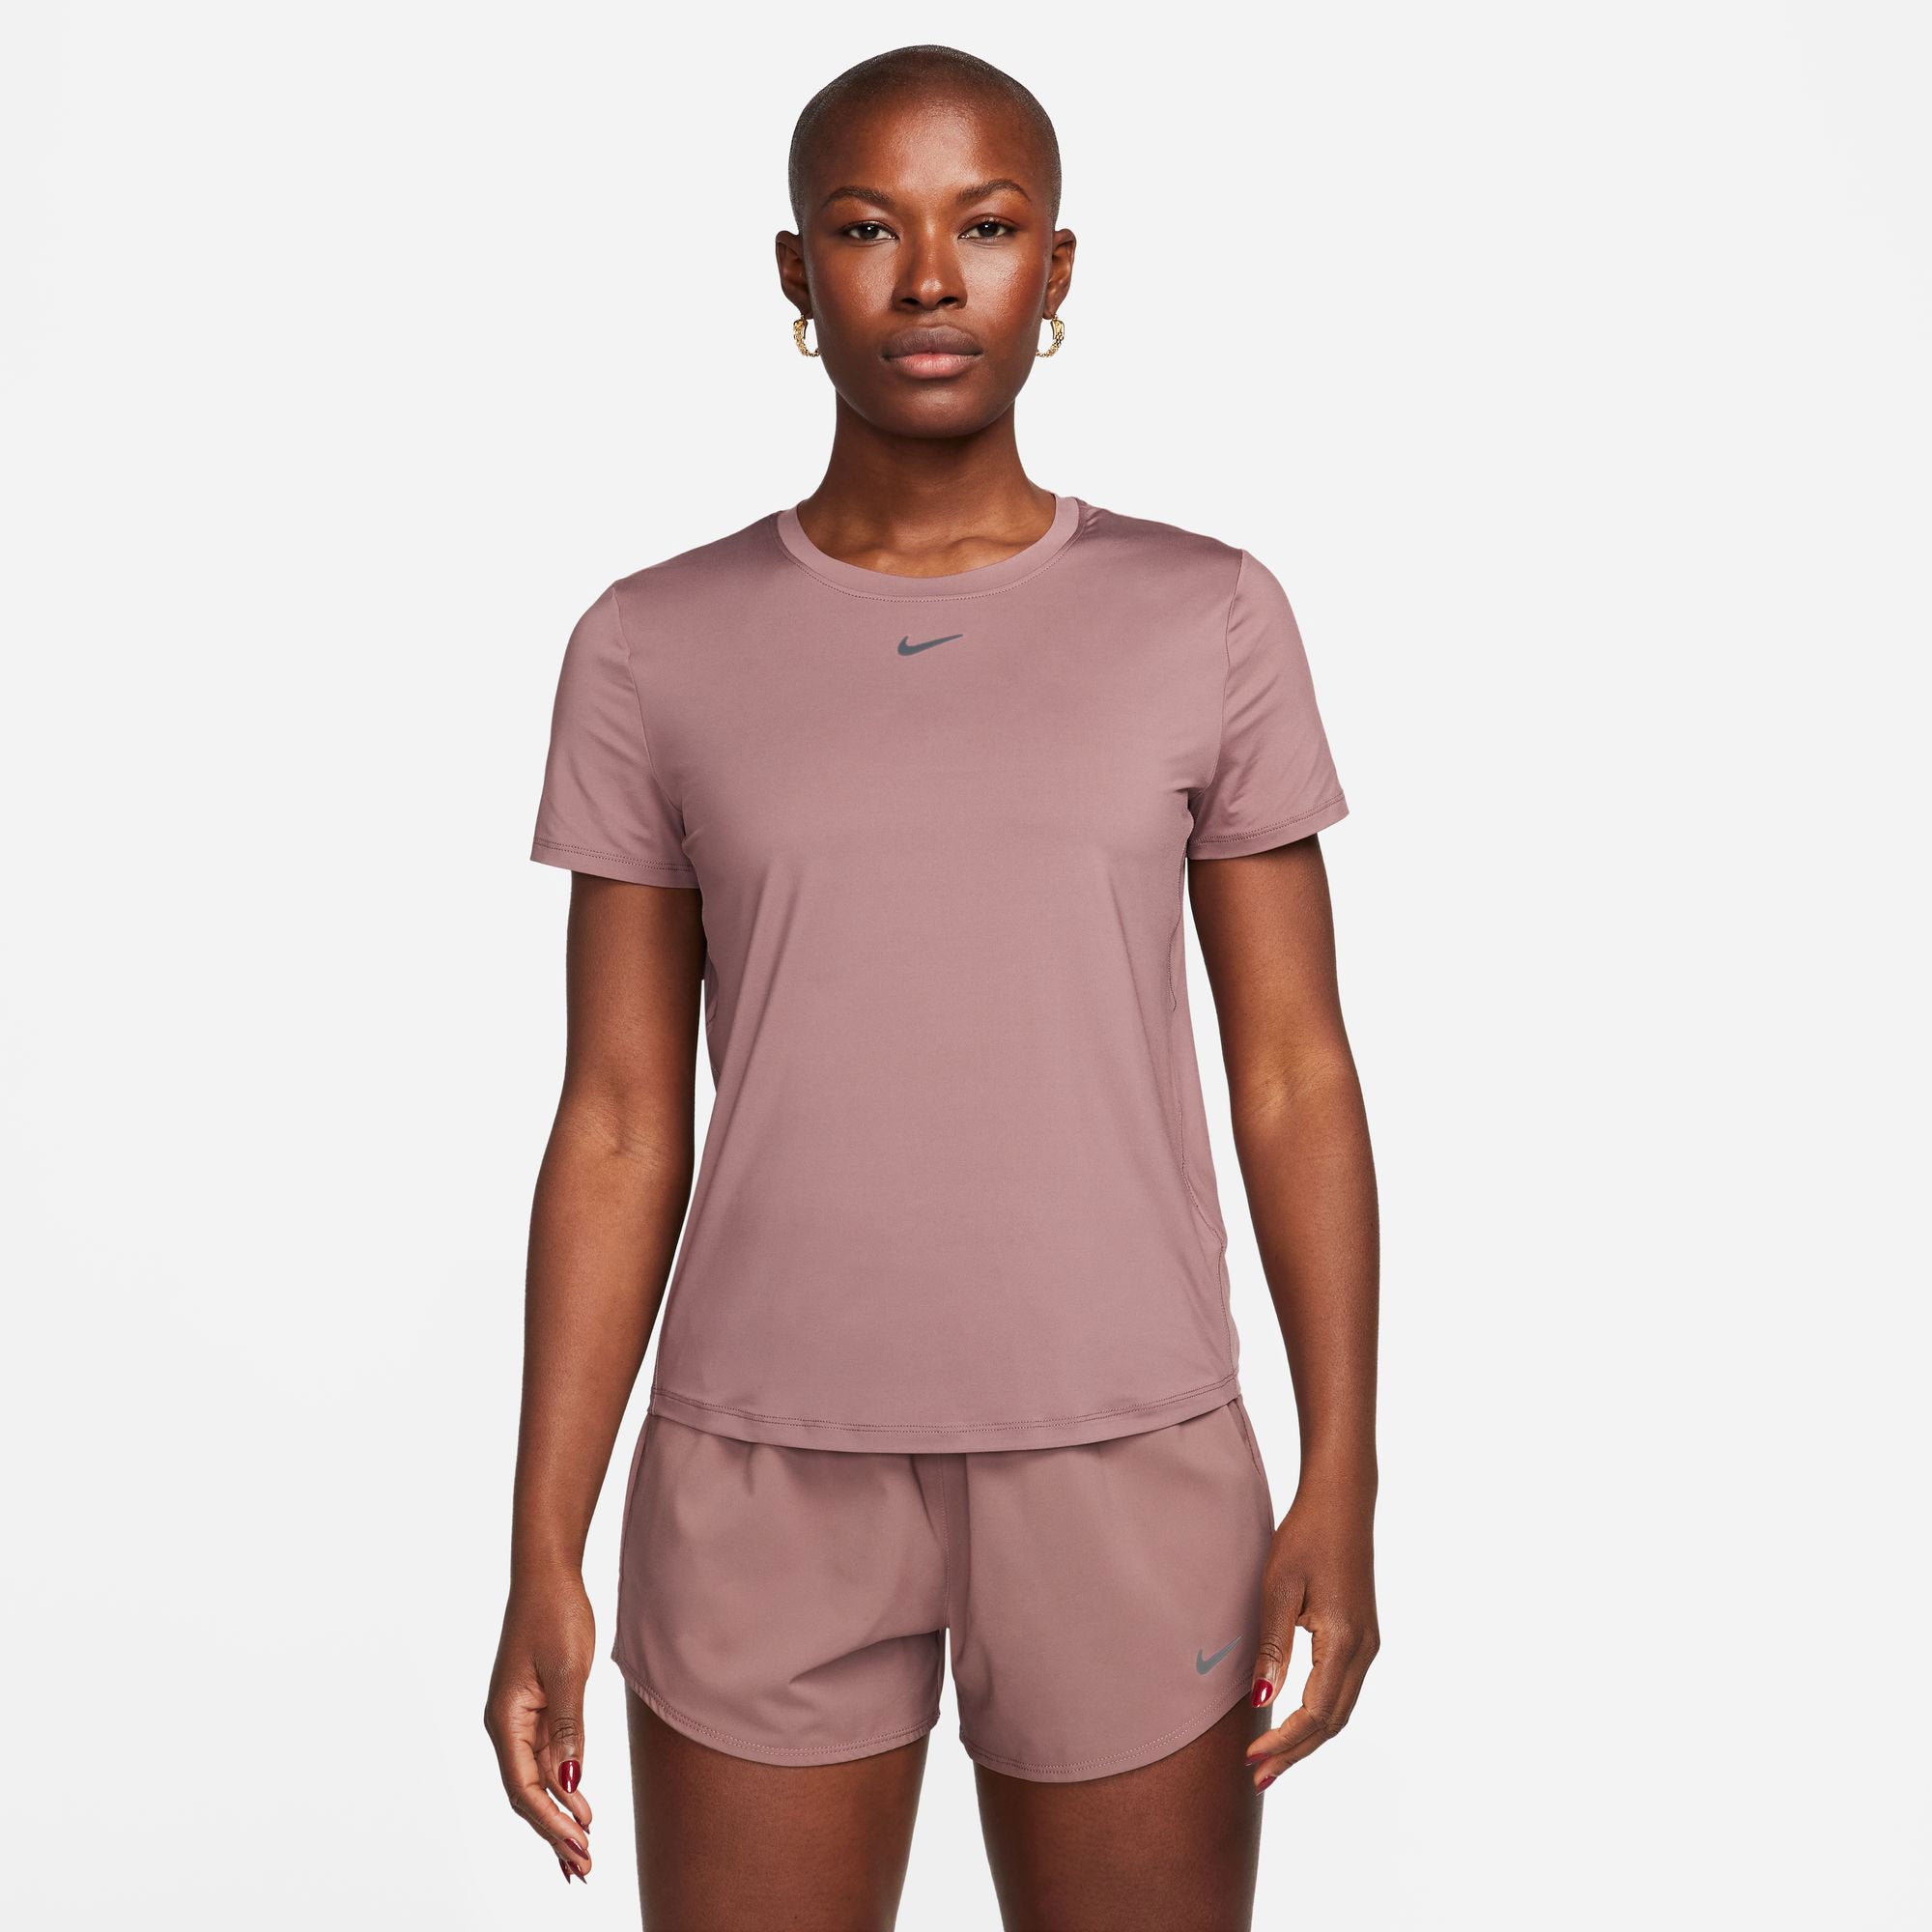 Nike One Classic Women's Dri-FIT Shirt - Brown (1)